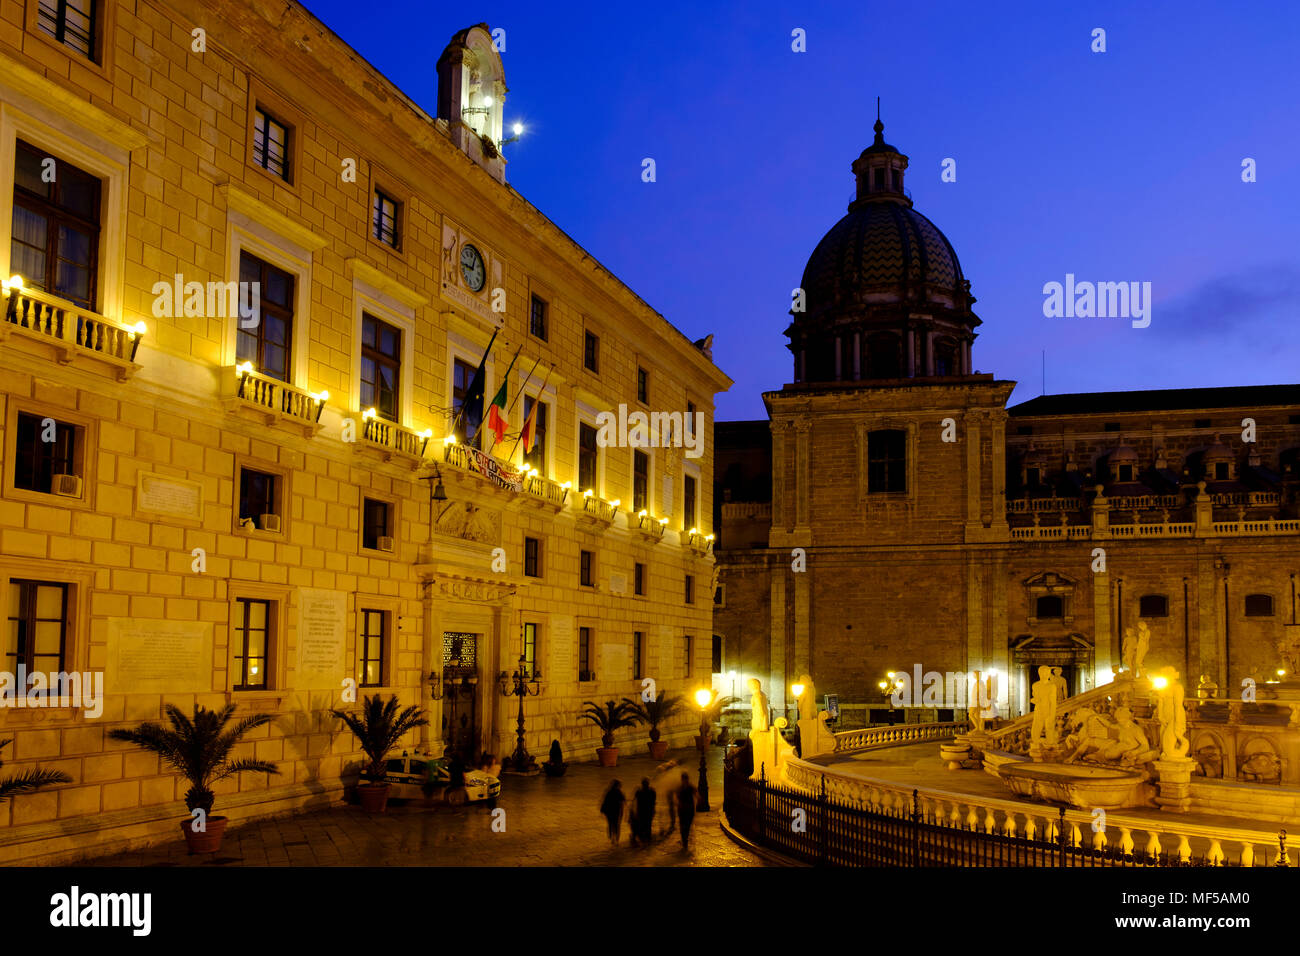 Fontana Pretoria, mit Palazzo Pretorio und San Giuseppe dei Teatini in der Dämmerung, Piazza Pretoria, Palermo, Sizilien, Italien Stockfoto